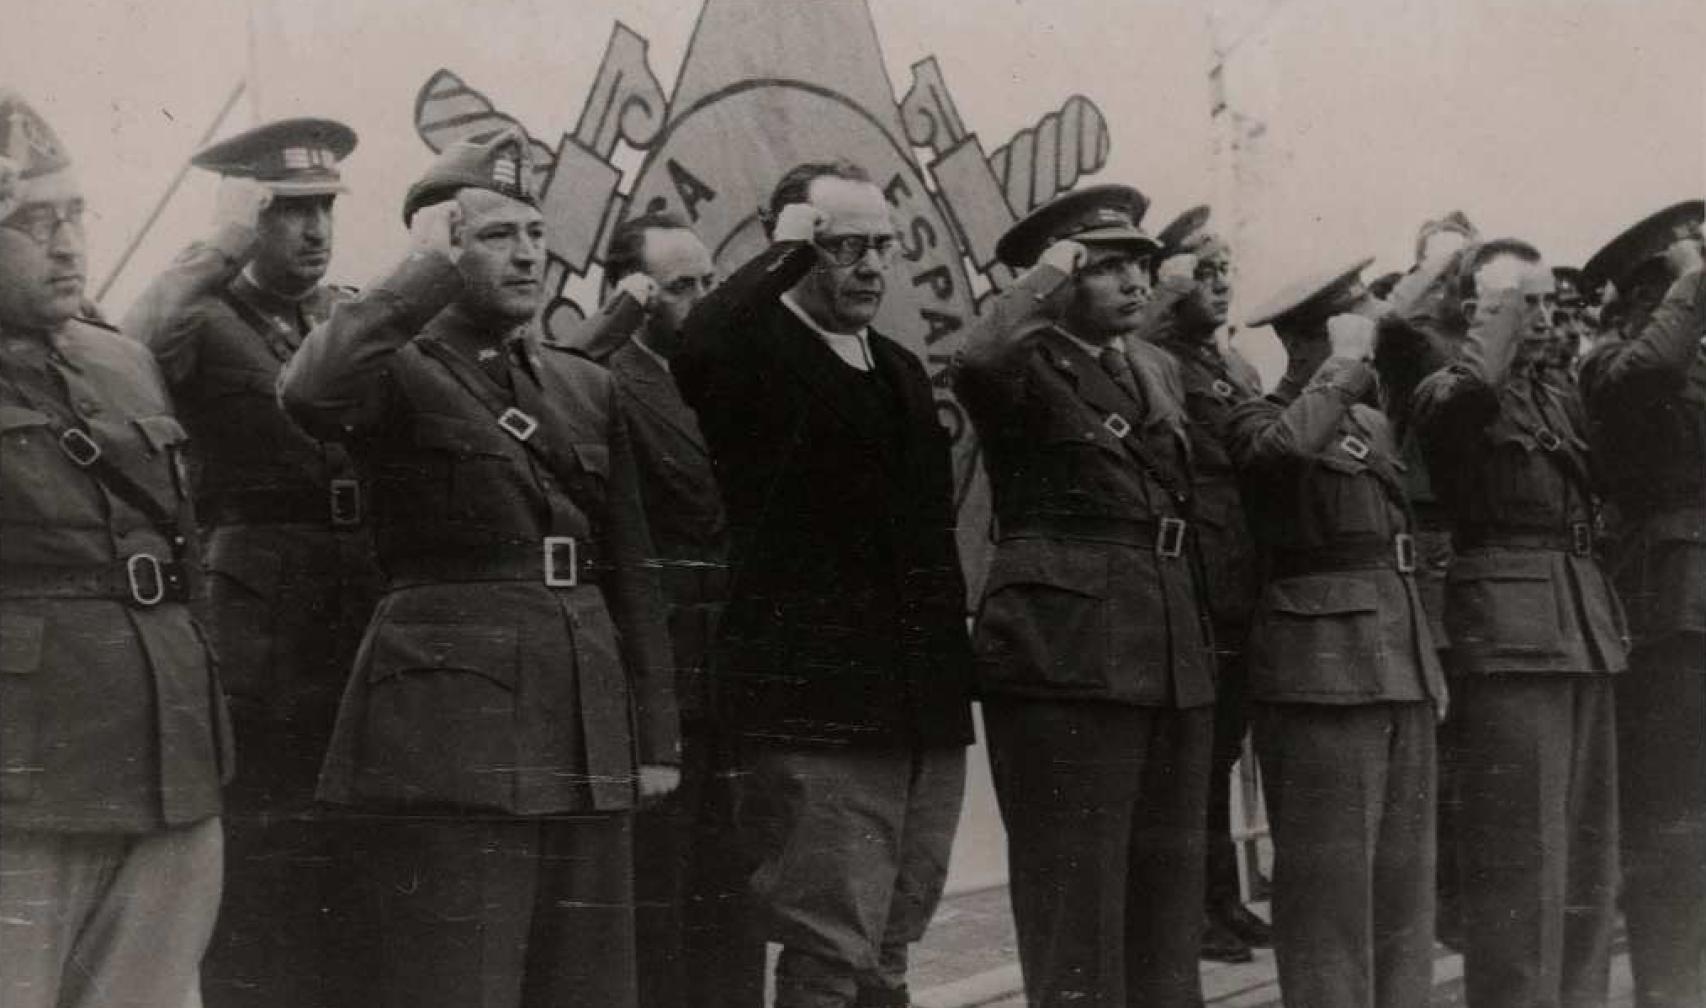 Discurso de despedida a las Brigadas Internacionales pronunciado por Juan Negrín el 25 de octubre de 1938 en Les Masies, Tarragona.